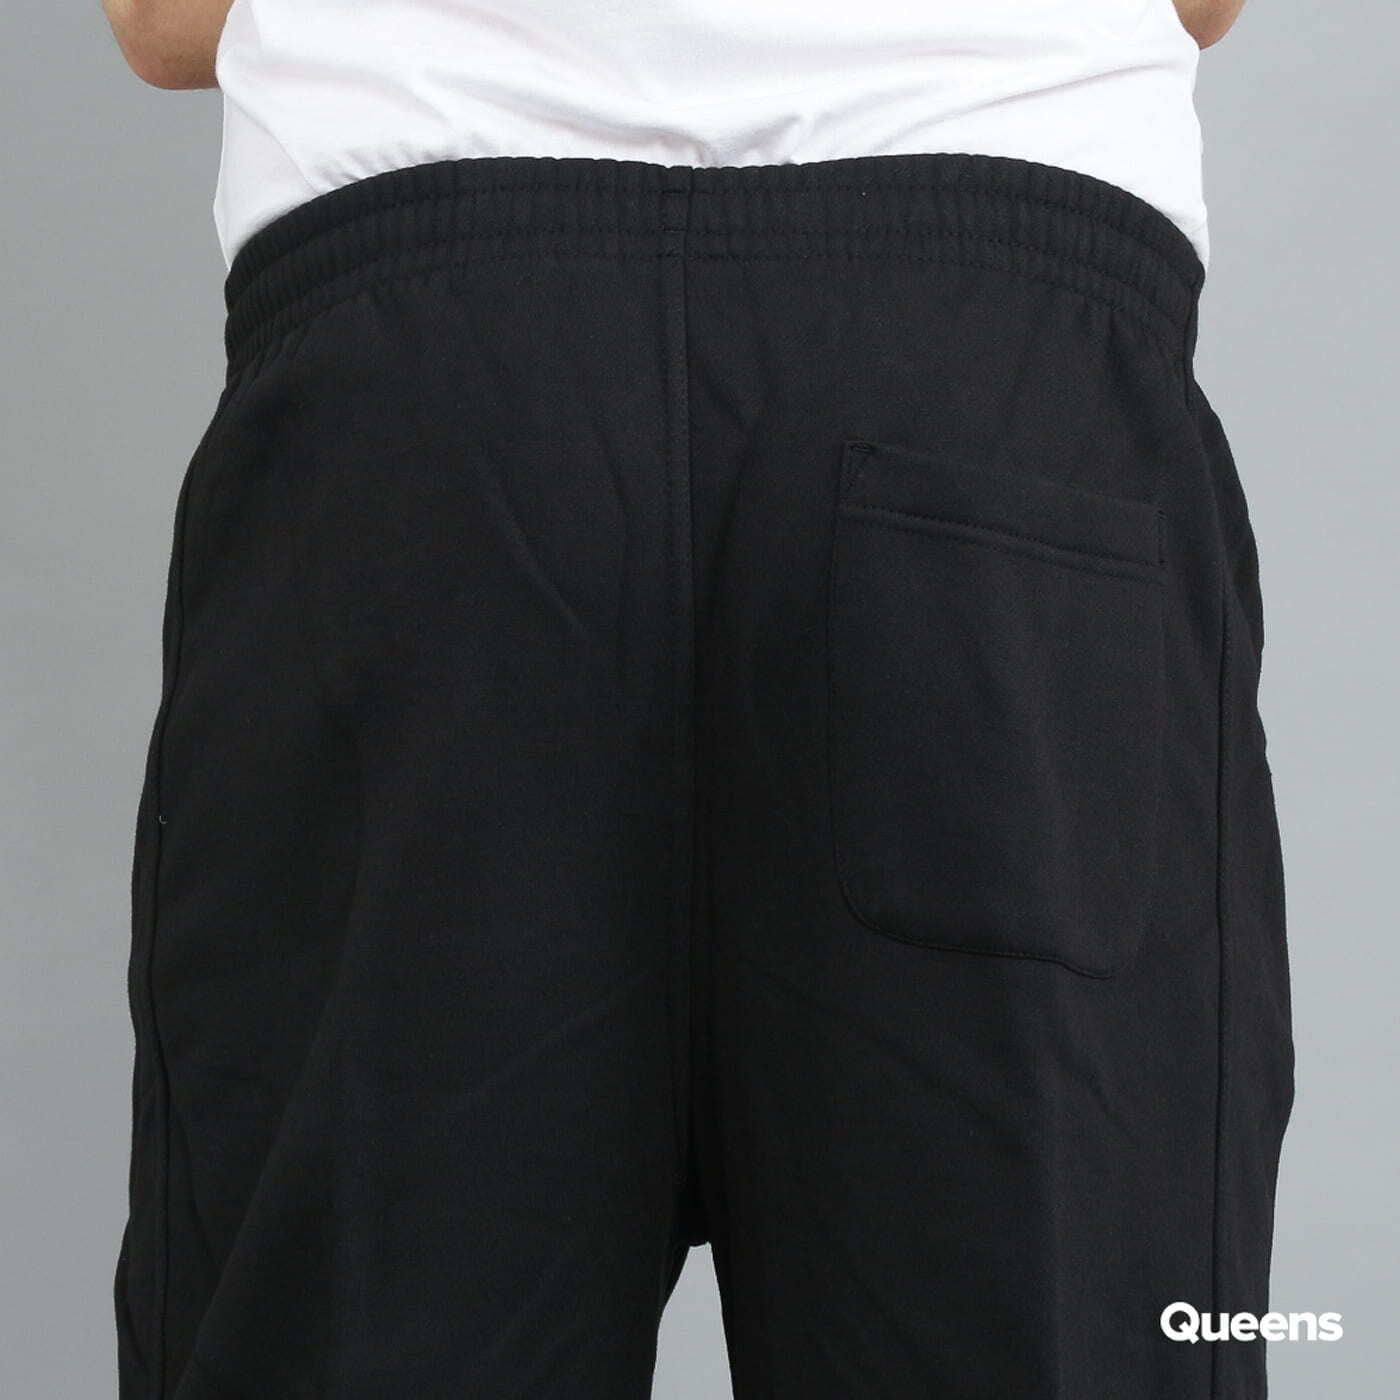 Jogger Pants Urban Classics Black Sweatpants | Blank Queens Train